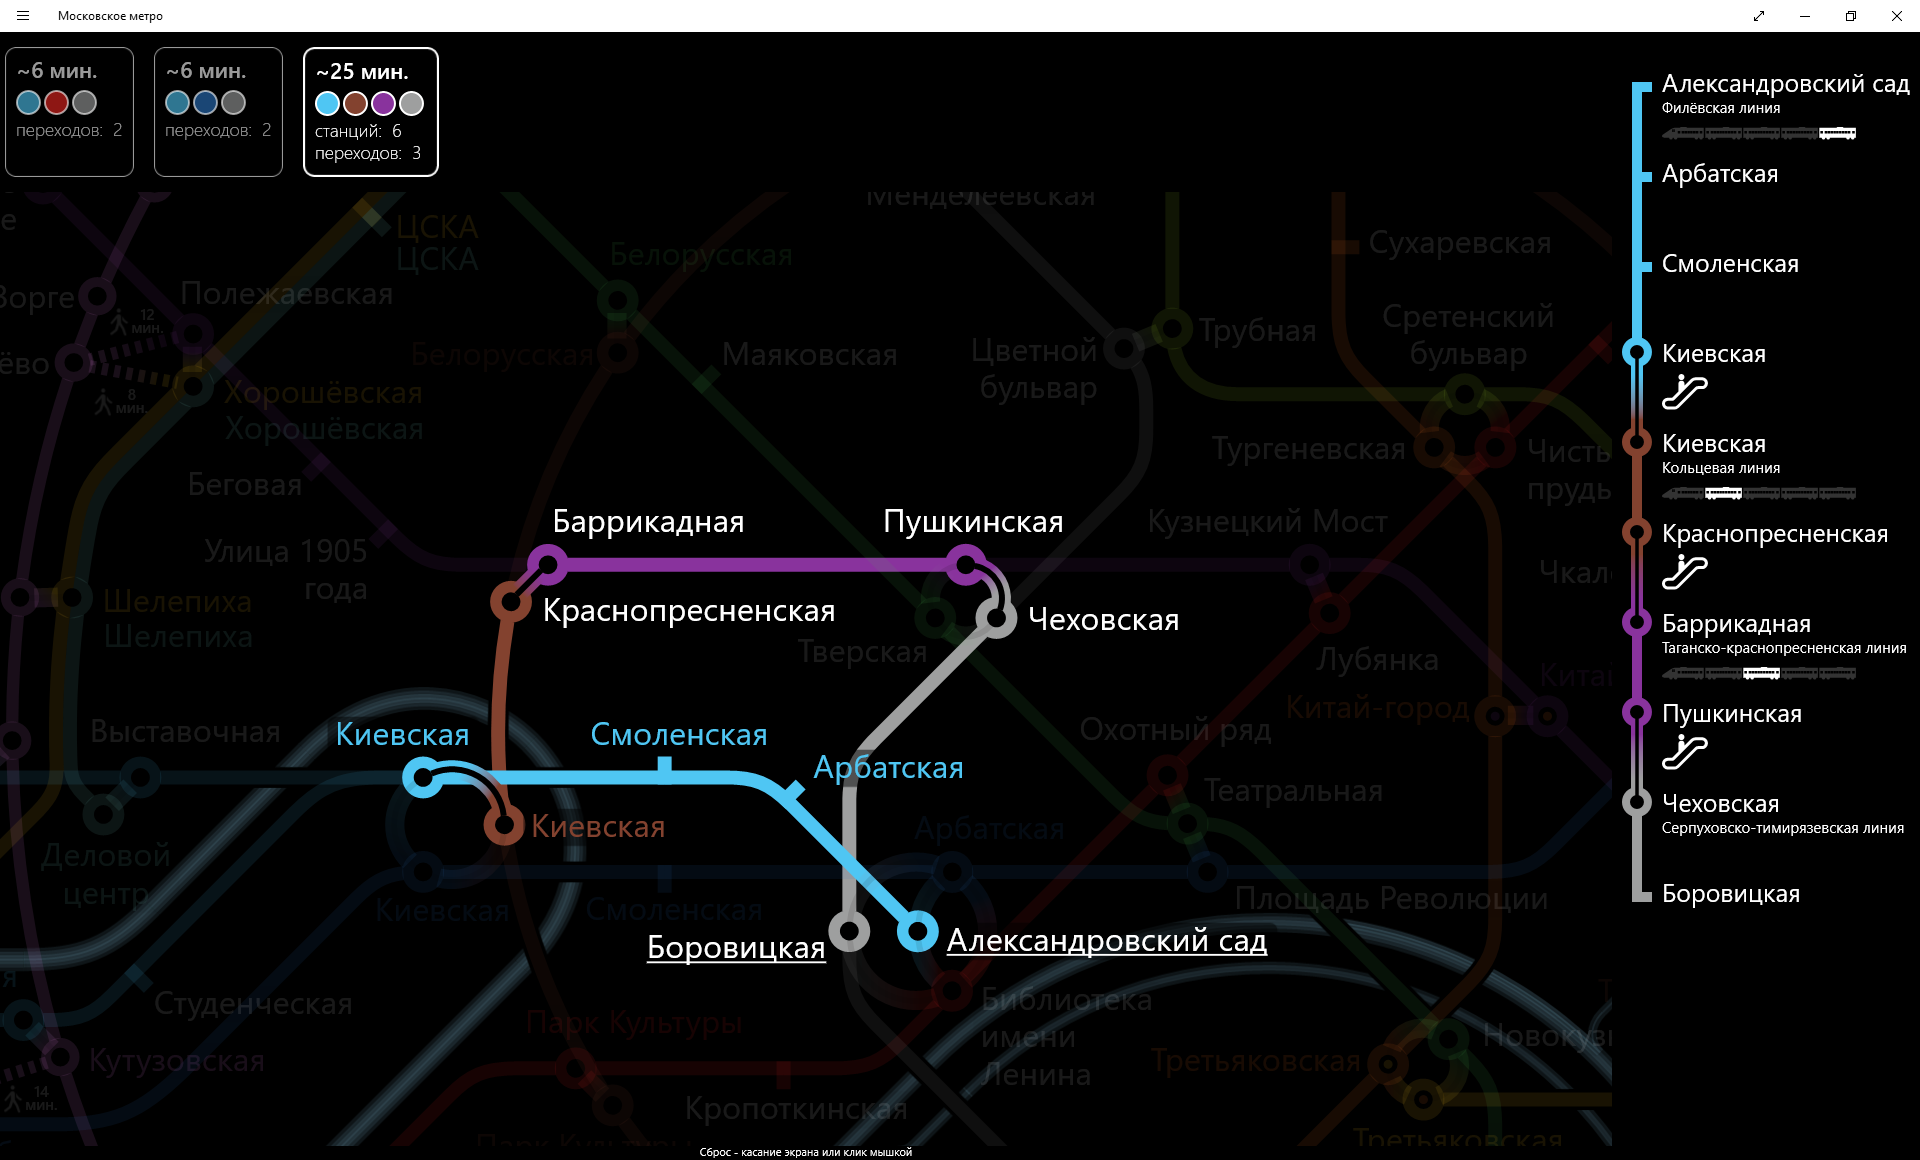 Приложение Московское метро для Windows Store - 8